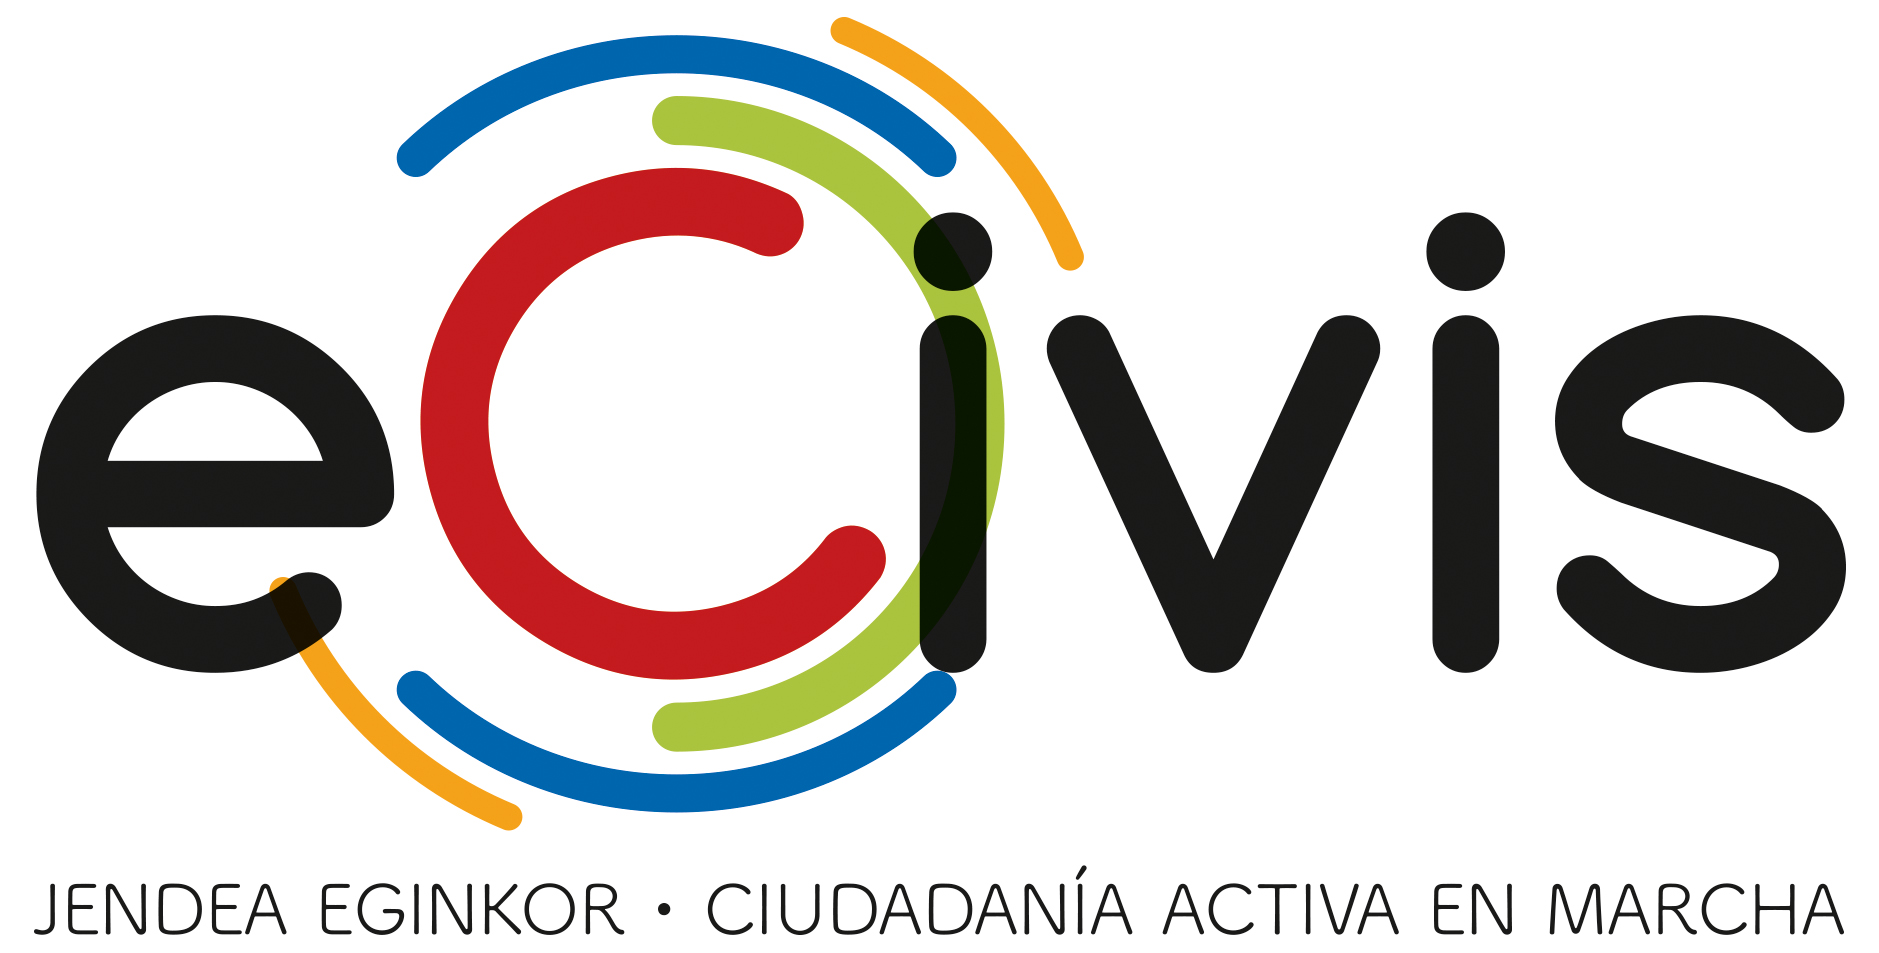 Imagen del logotipo de: eCivis, asociación para la promoción de la ciudadanía activa